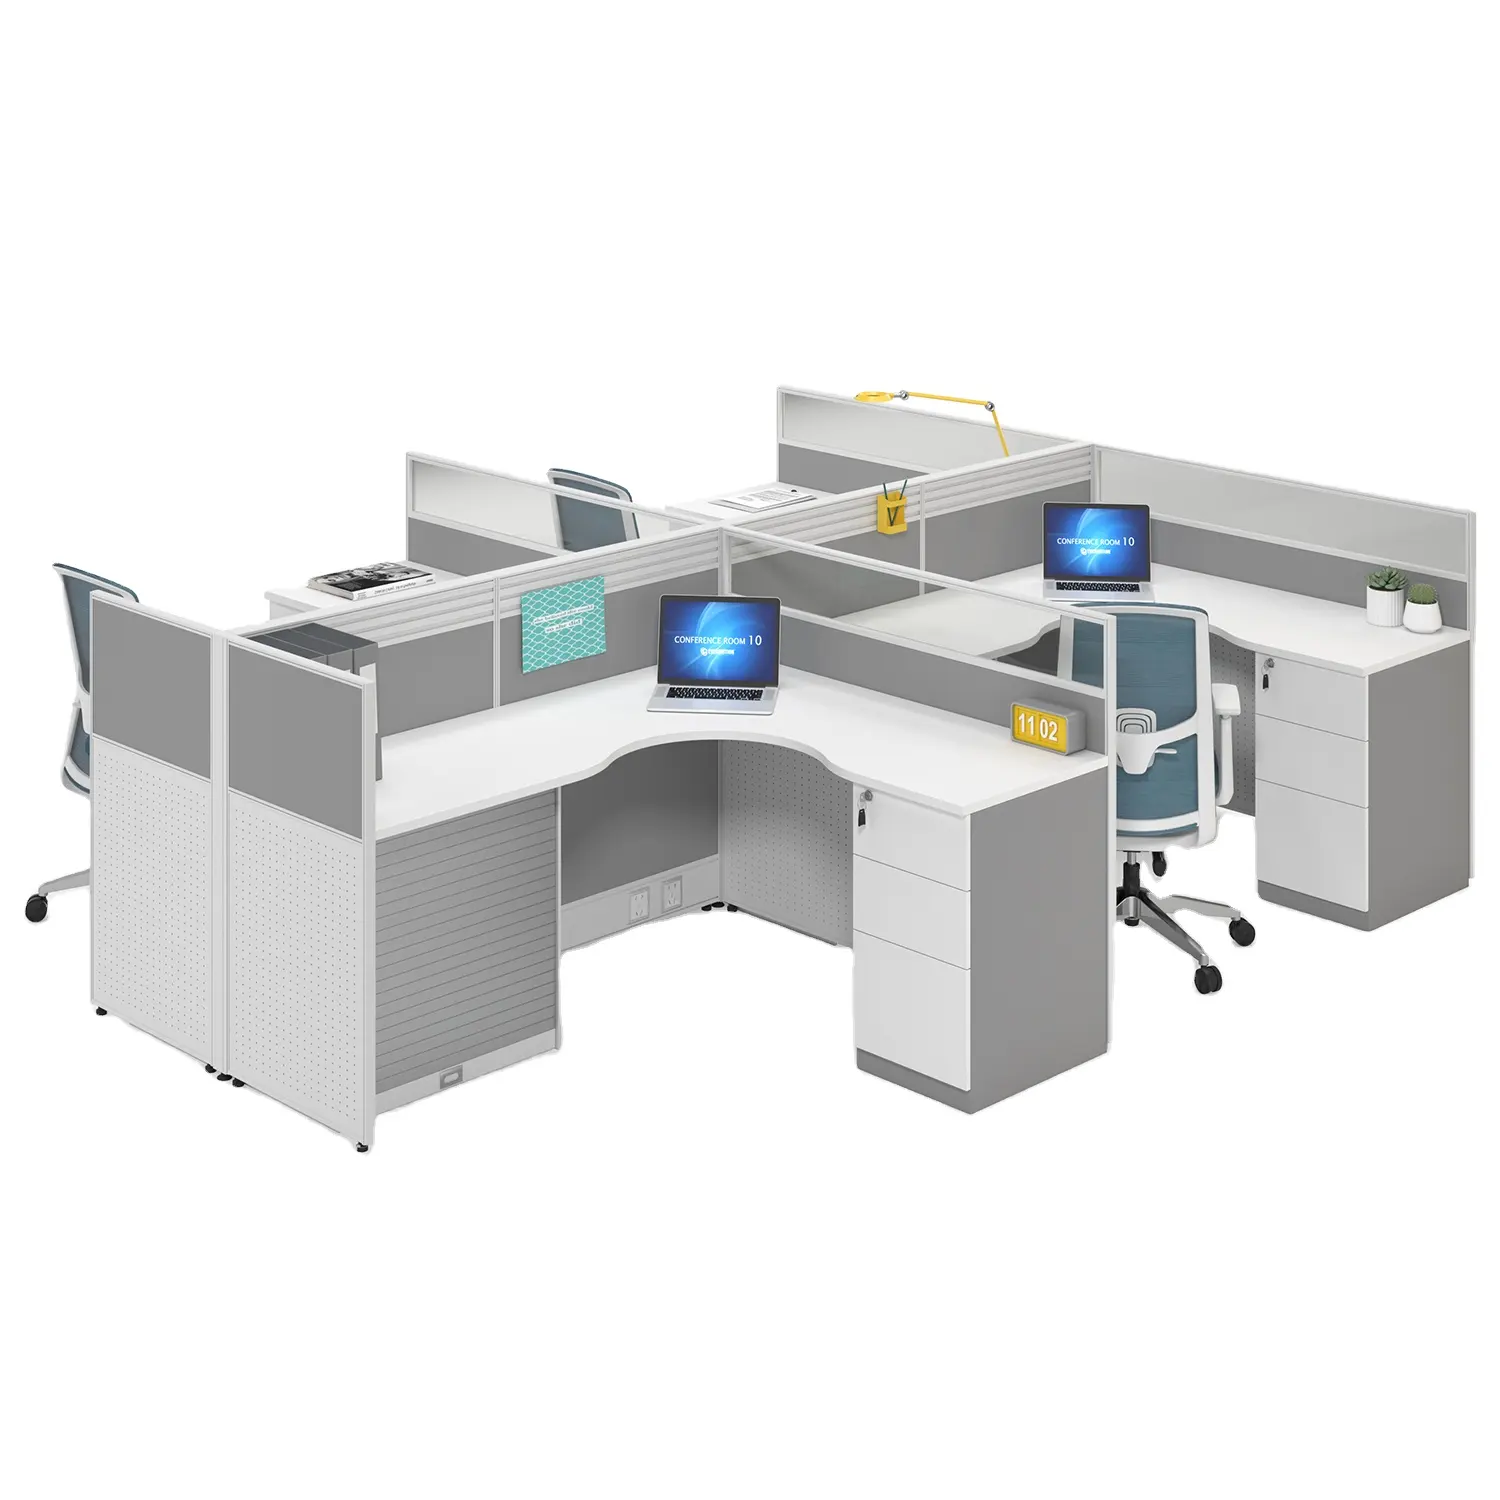 מודרני 4-אדם משרד תחנות עבודה, מודרני משרד מחיצות, מסכי שולחן עבודה יכול להיות מותאם אישית תחנות עבודה